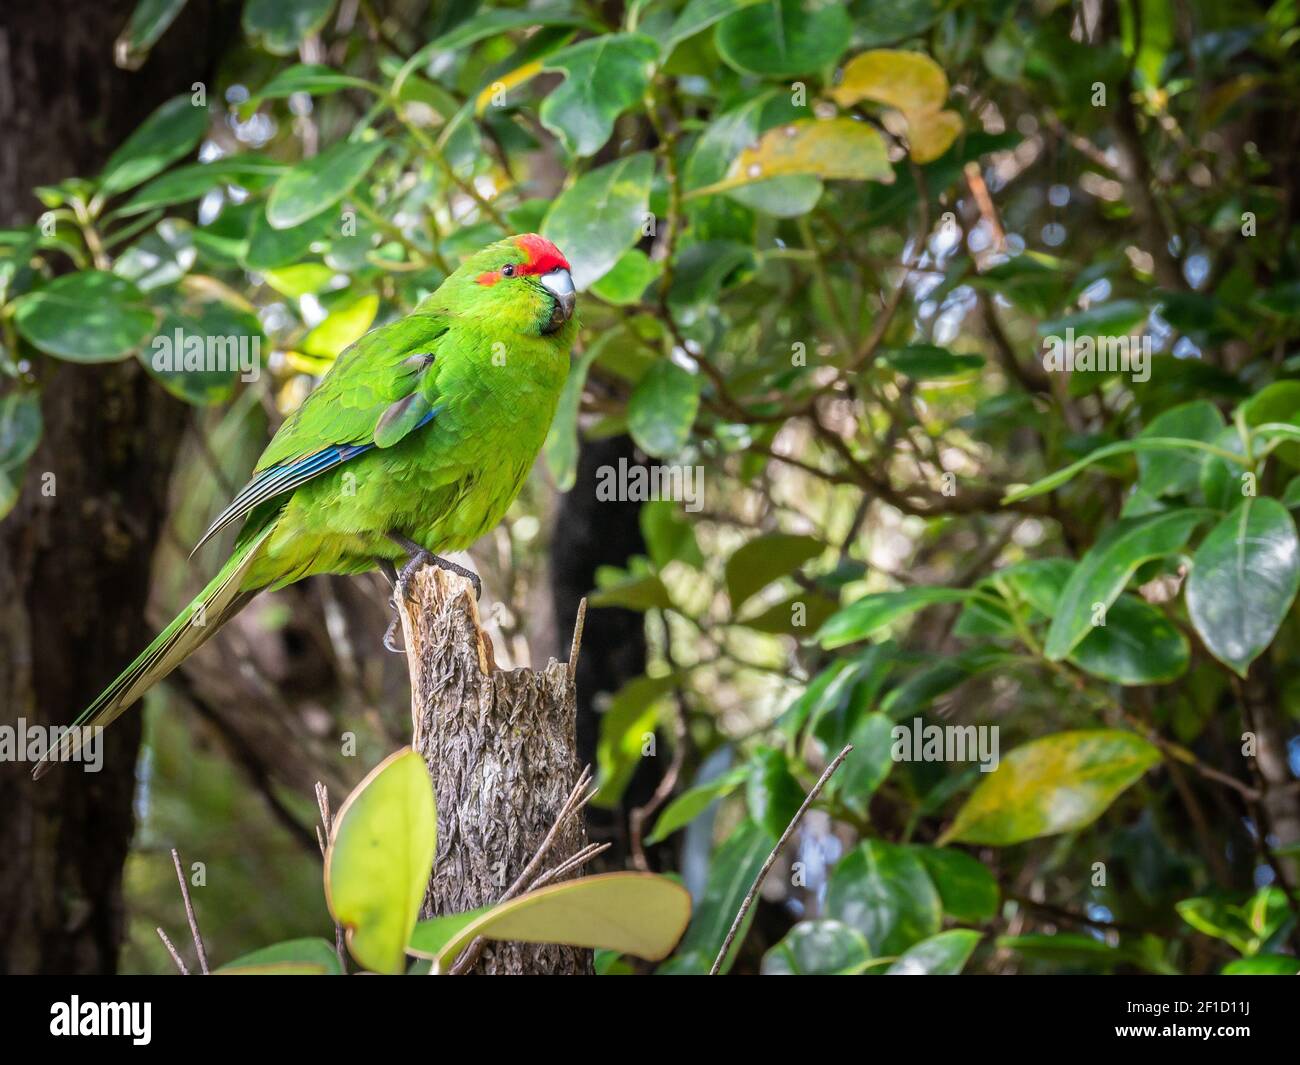 Raro pappagallo nativo nel suo habitat naturale. Girato sull'Isola di Ulva, nella zona di Stewart Island (Rakiura), Nuova Zelanda Foto Stock